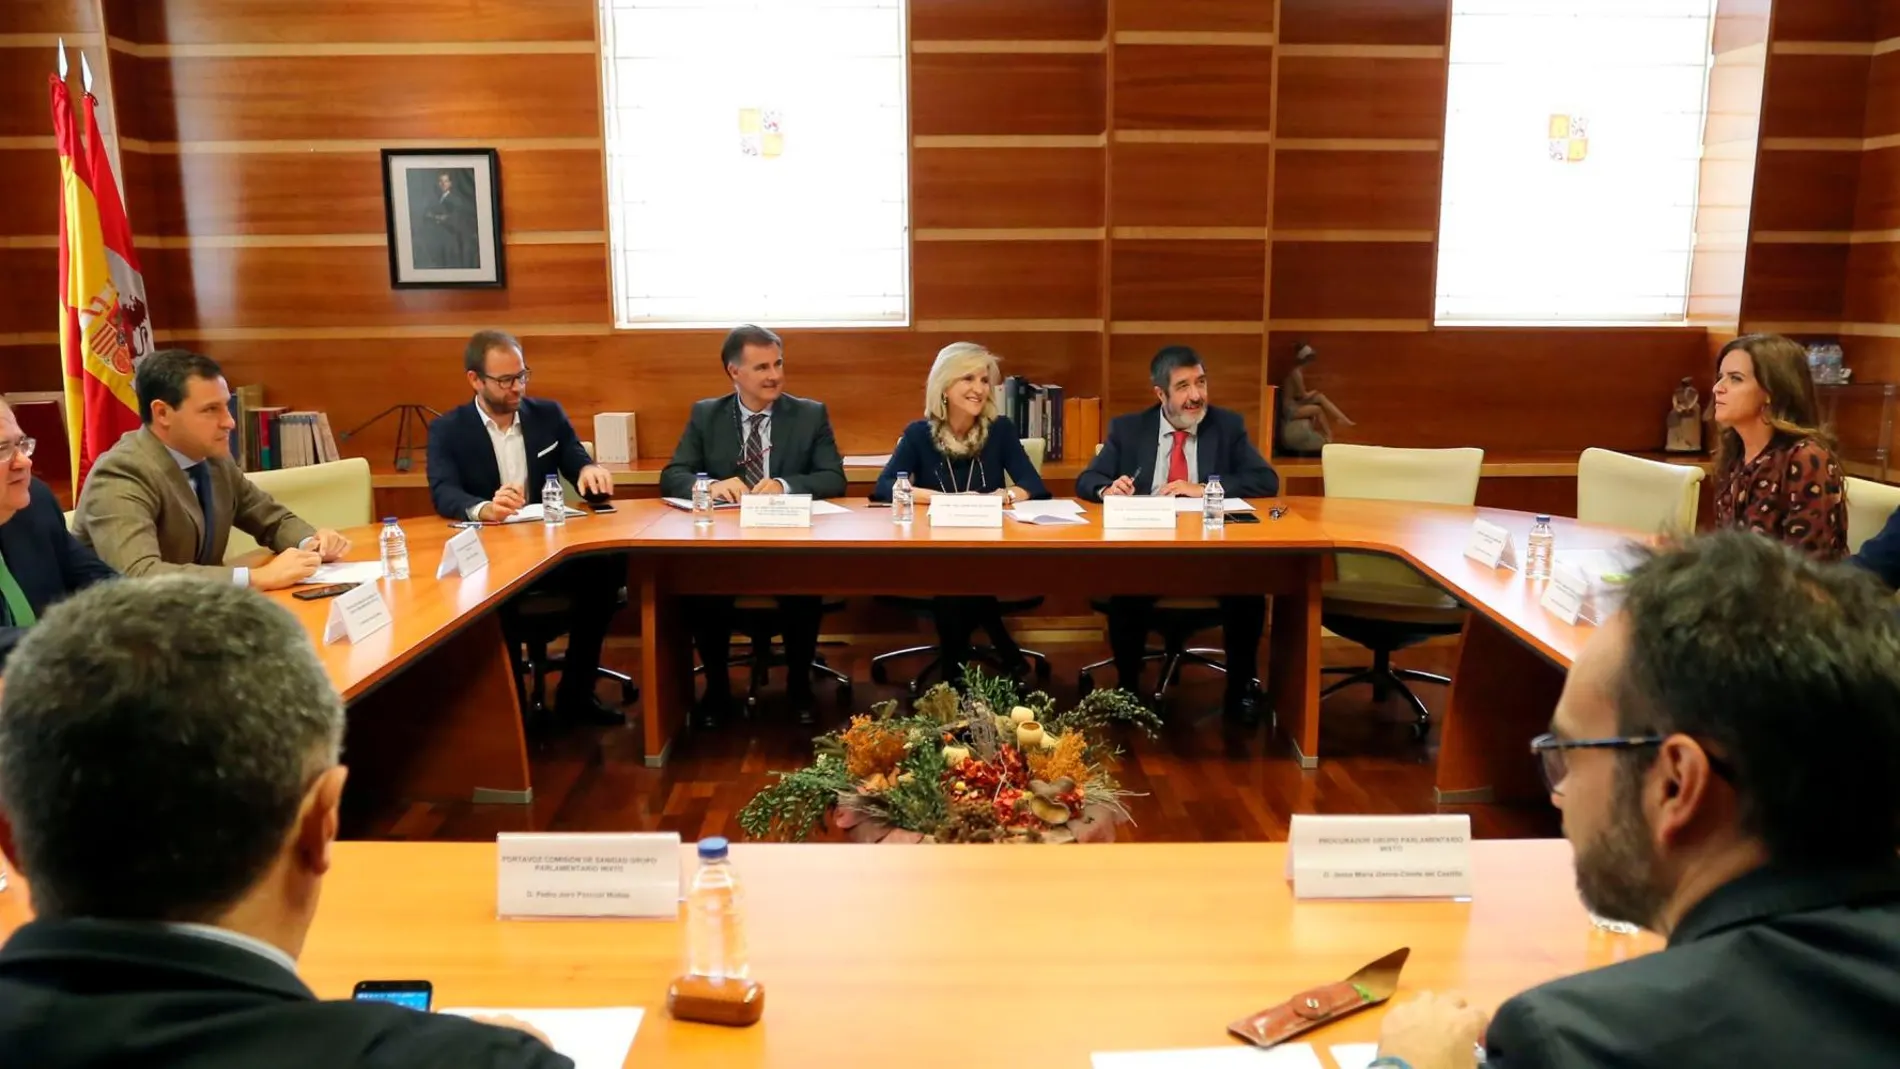 La consejera Verónica Casado preside la reunión con los portavoces de los grupos parlamentarios, a la que no asistieron Tudanca ni Pablo Fernández